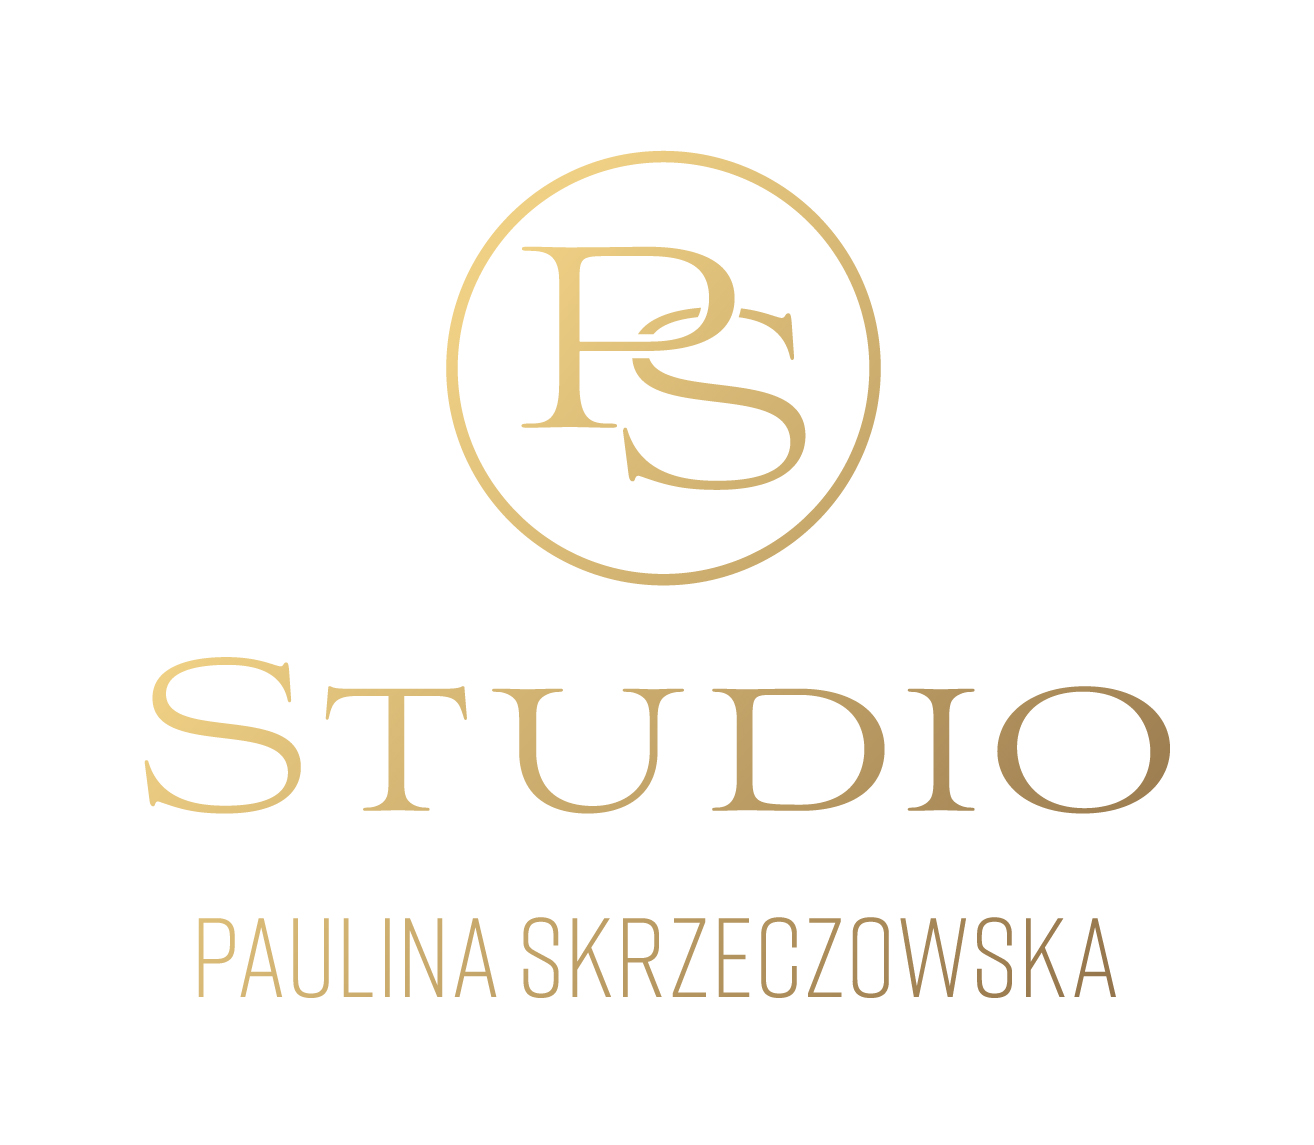 PS Studio Paulina Skrzeczowska, Kalinkowa 58, 86-300, Grudziądz